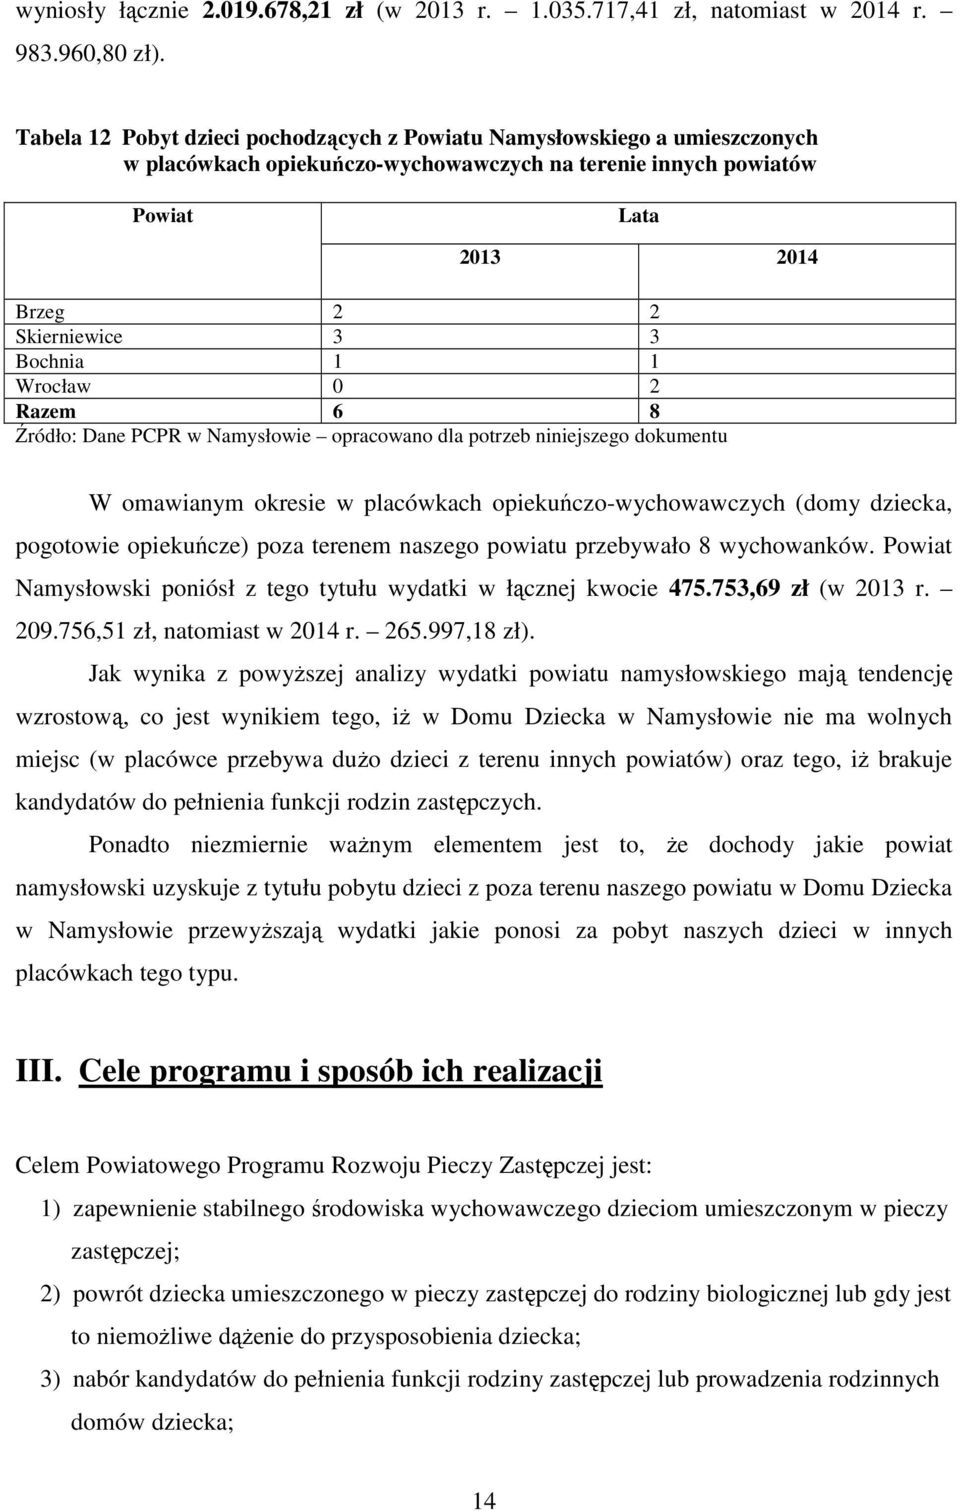 1 1 Wrocław 0 2 Razem 6 8 Źródło: Dane PCPR opracowano dla potrzeb niniejszego dokumentu W omawianym okresie w placówkach opiekuńczo-wychowawczych (domy dziecka, pogotowie opiekuńcze) poza terenem